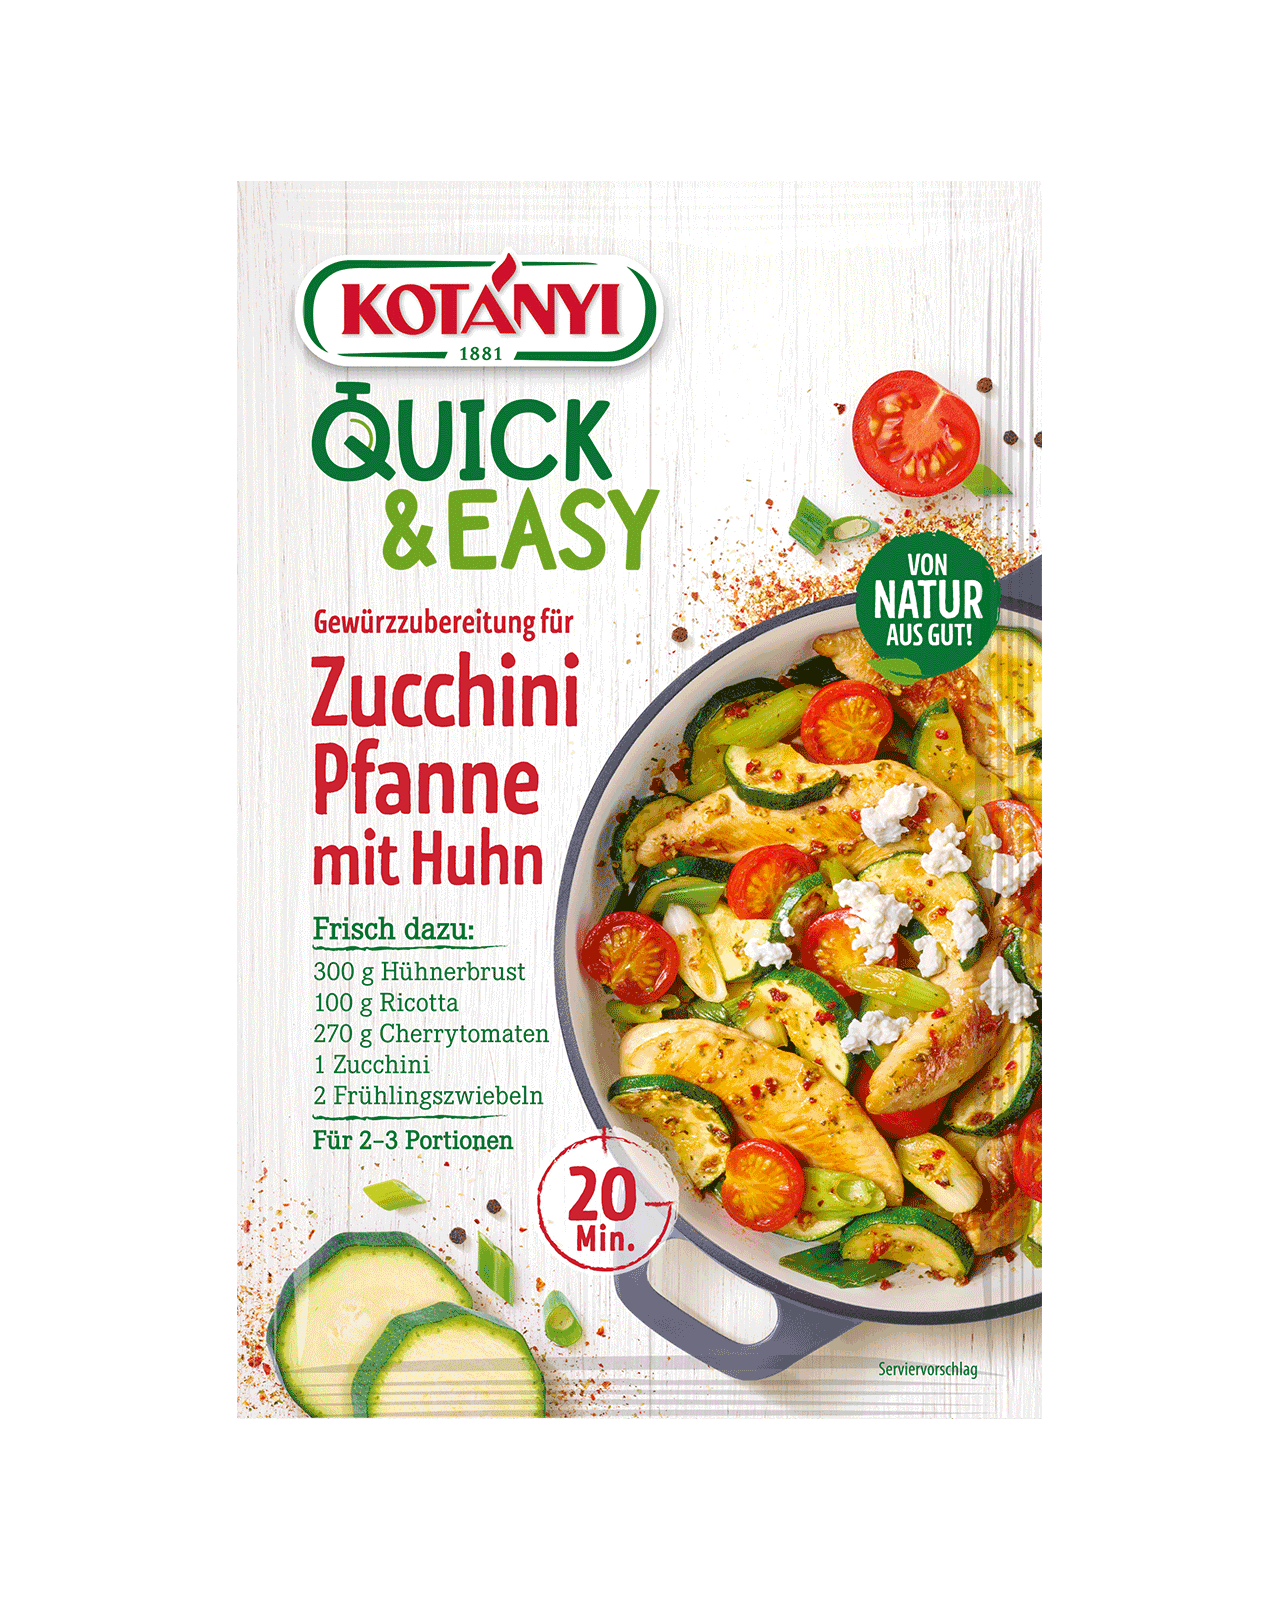 9001414035962 359601 Kotányi Quick&easy Gewürzubereitung Für Zucchini Pfanne Mit Huhn At Pouch Vs